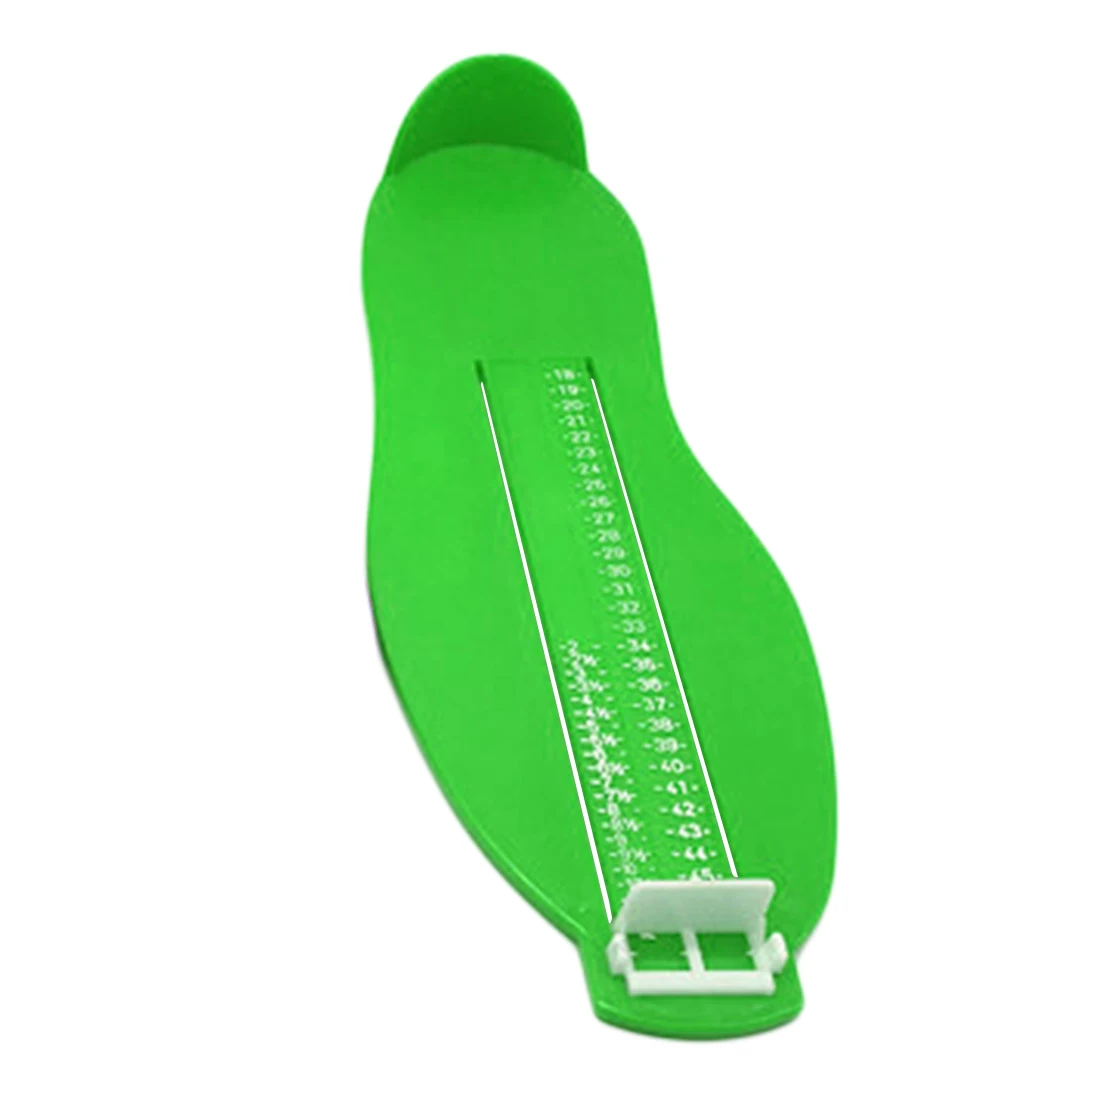 Измерительный инструмент для ног, обувь для взрослых, вспомогательный размер, измерительная линейка, инструменты для взрослых, обувная фурнитура, размеры 18-47